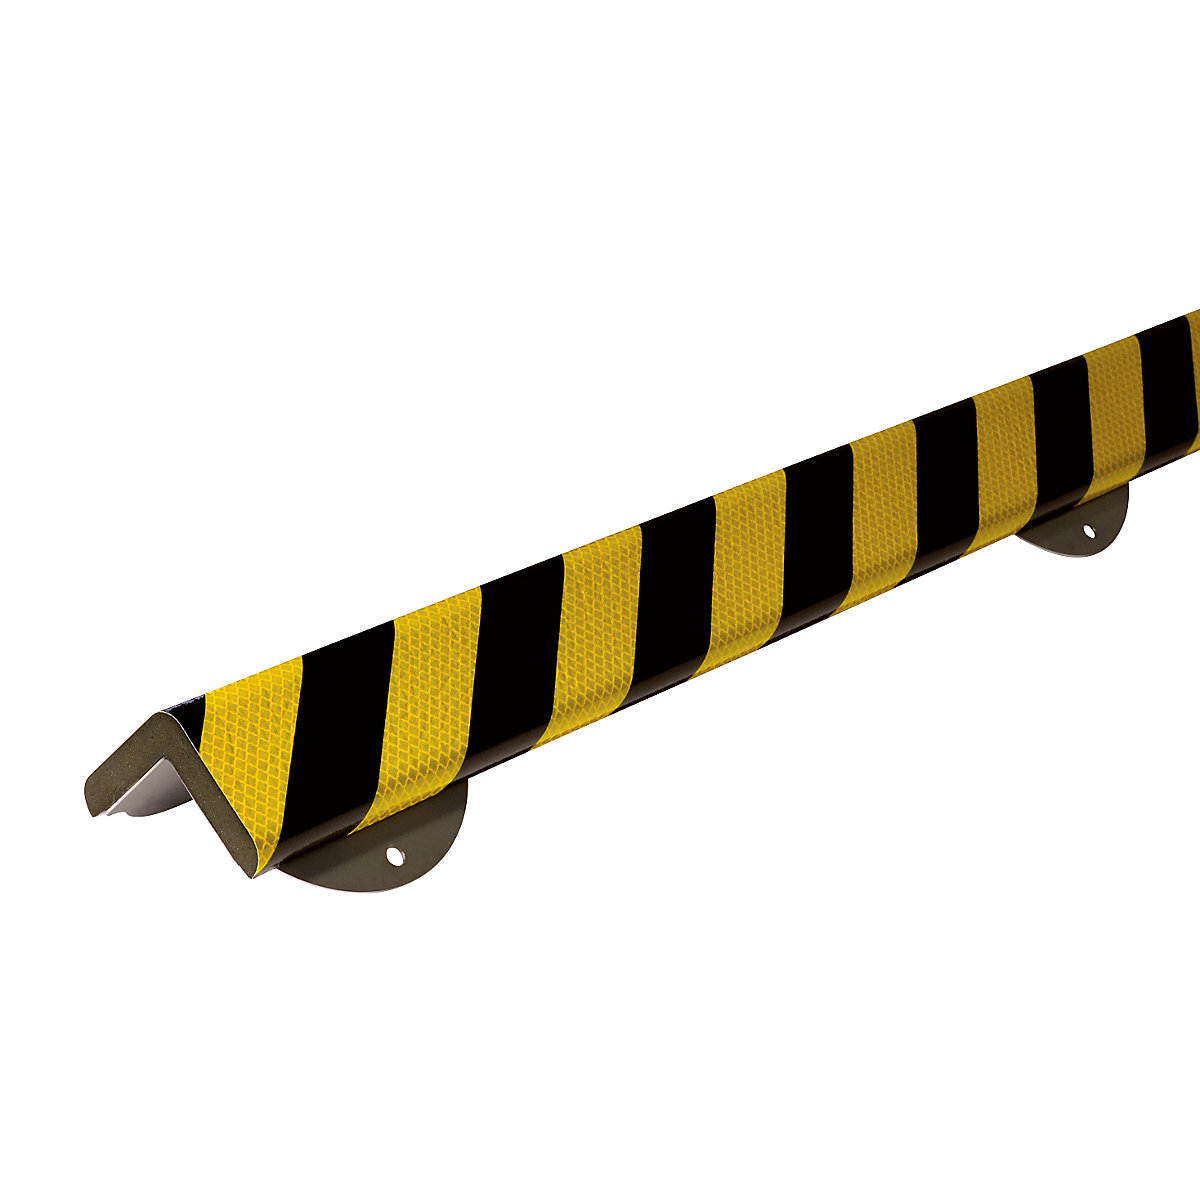 Protecție pentru colț Knuffi® cu șină de montaj – SHG, tip H+, bucată de 1 m, negru / galben, reflectorizant-11